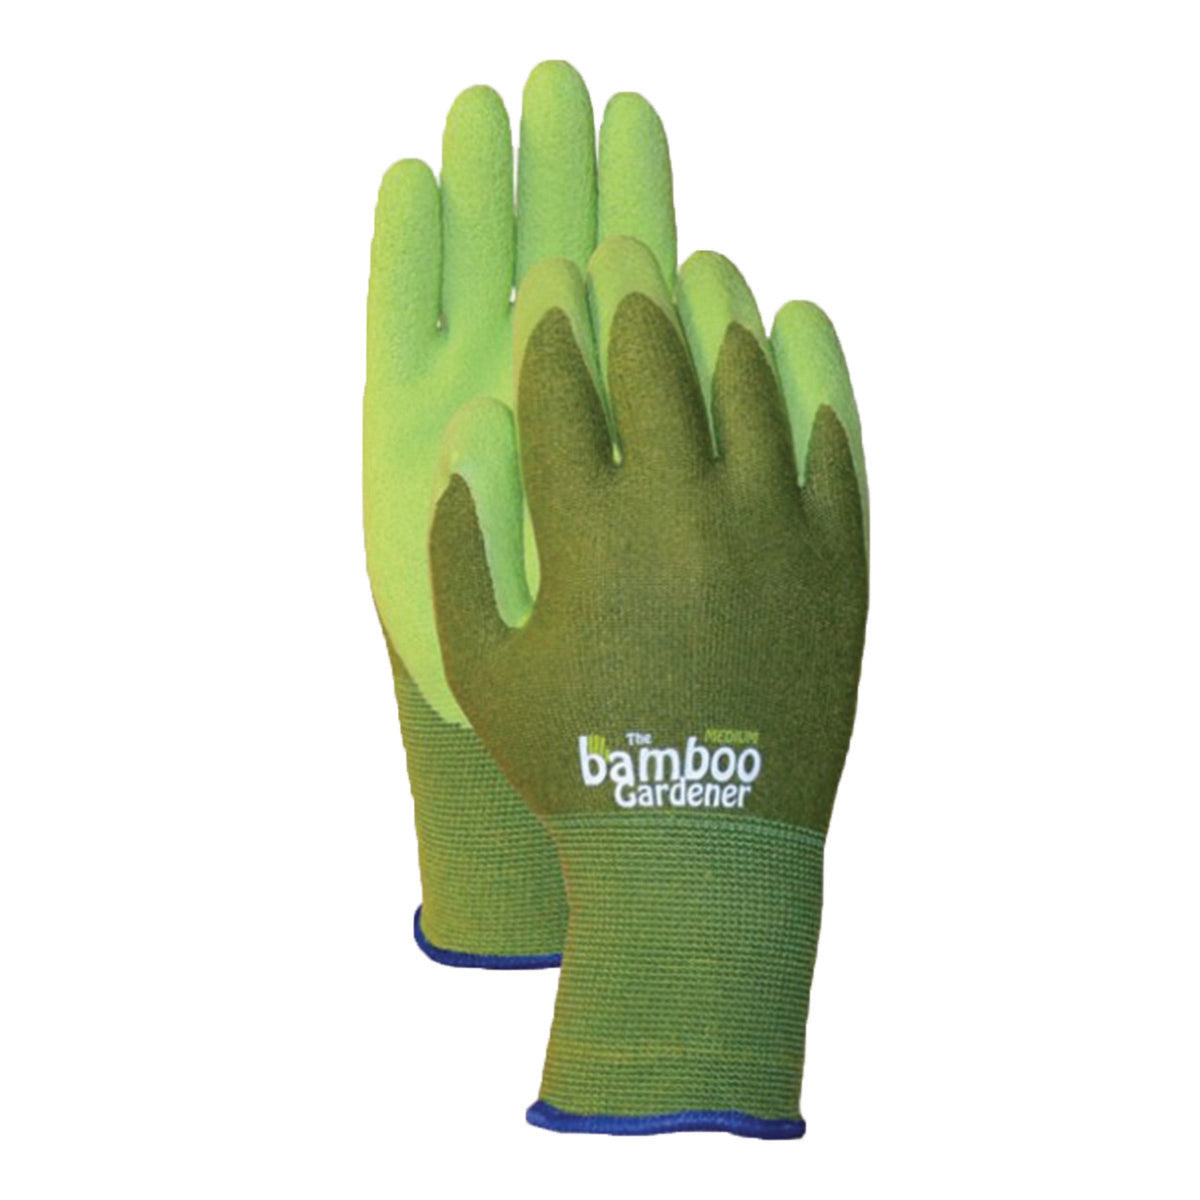 Bamboo Gardener Gloves